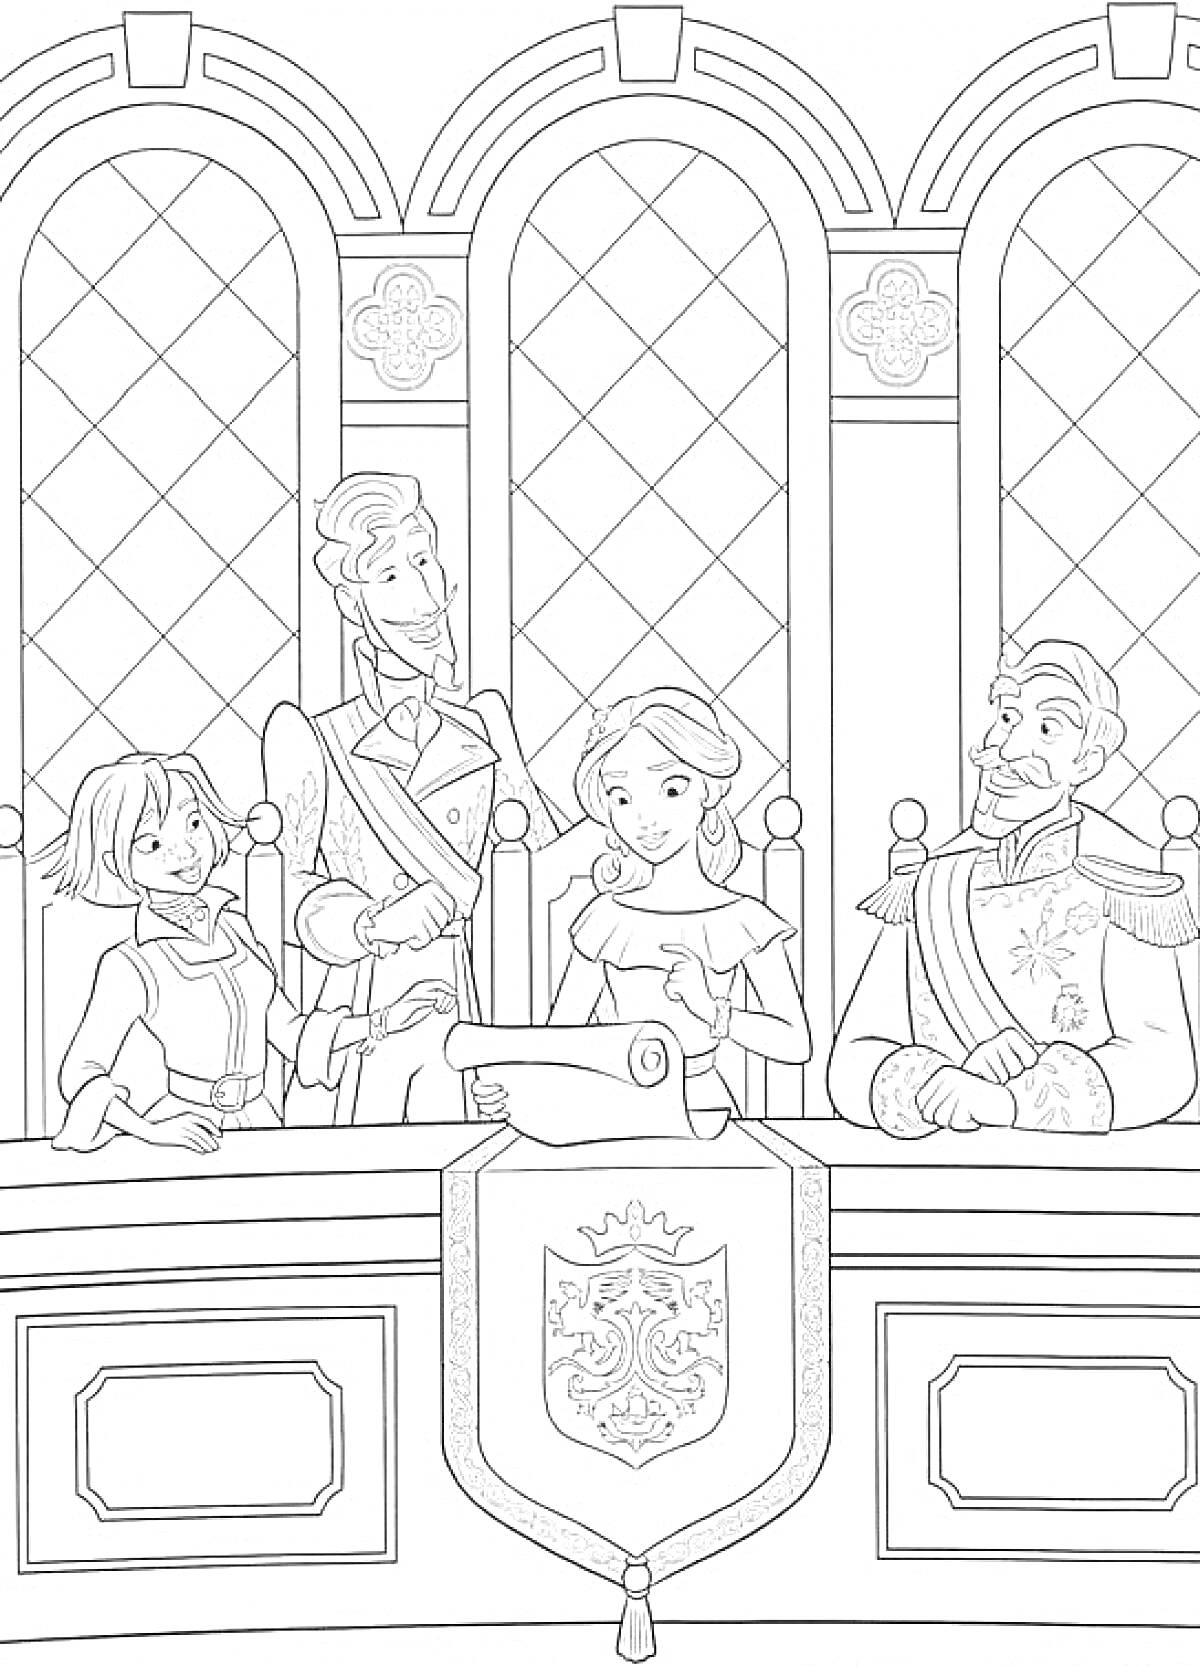 Елена из Авалора за столом с картой, в окружении трех людей, в зале с арочными окнами и гербом